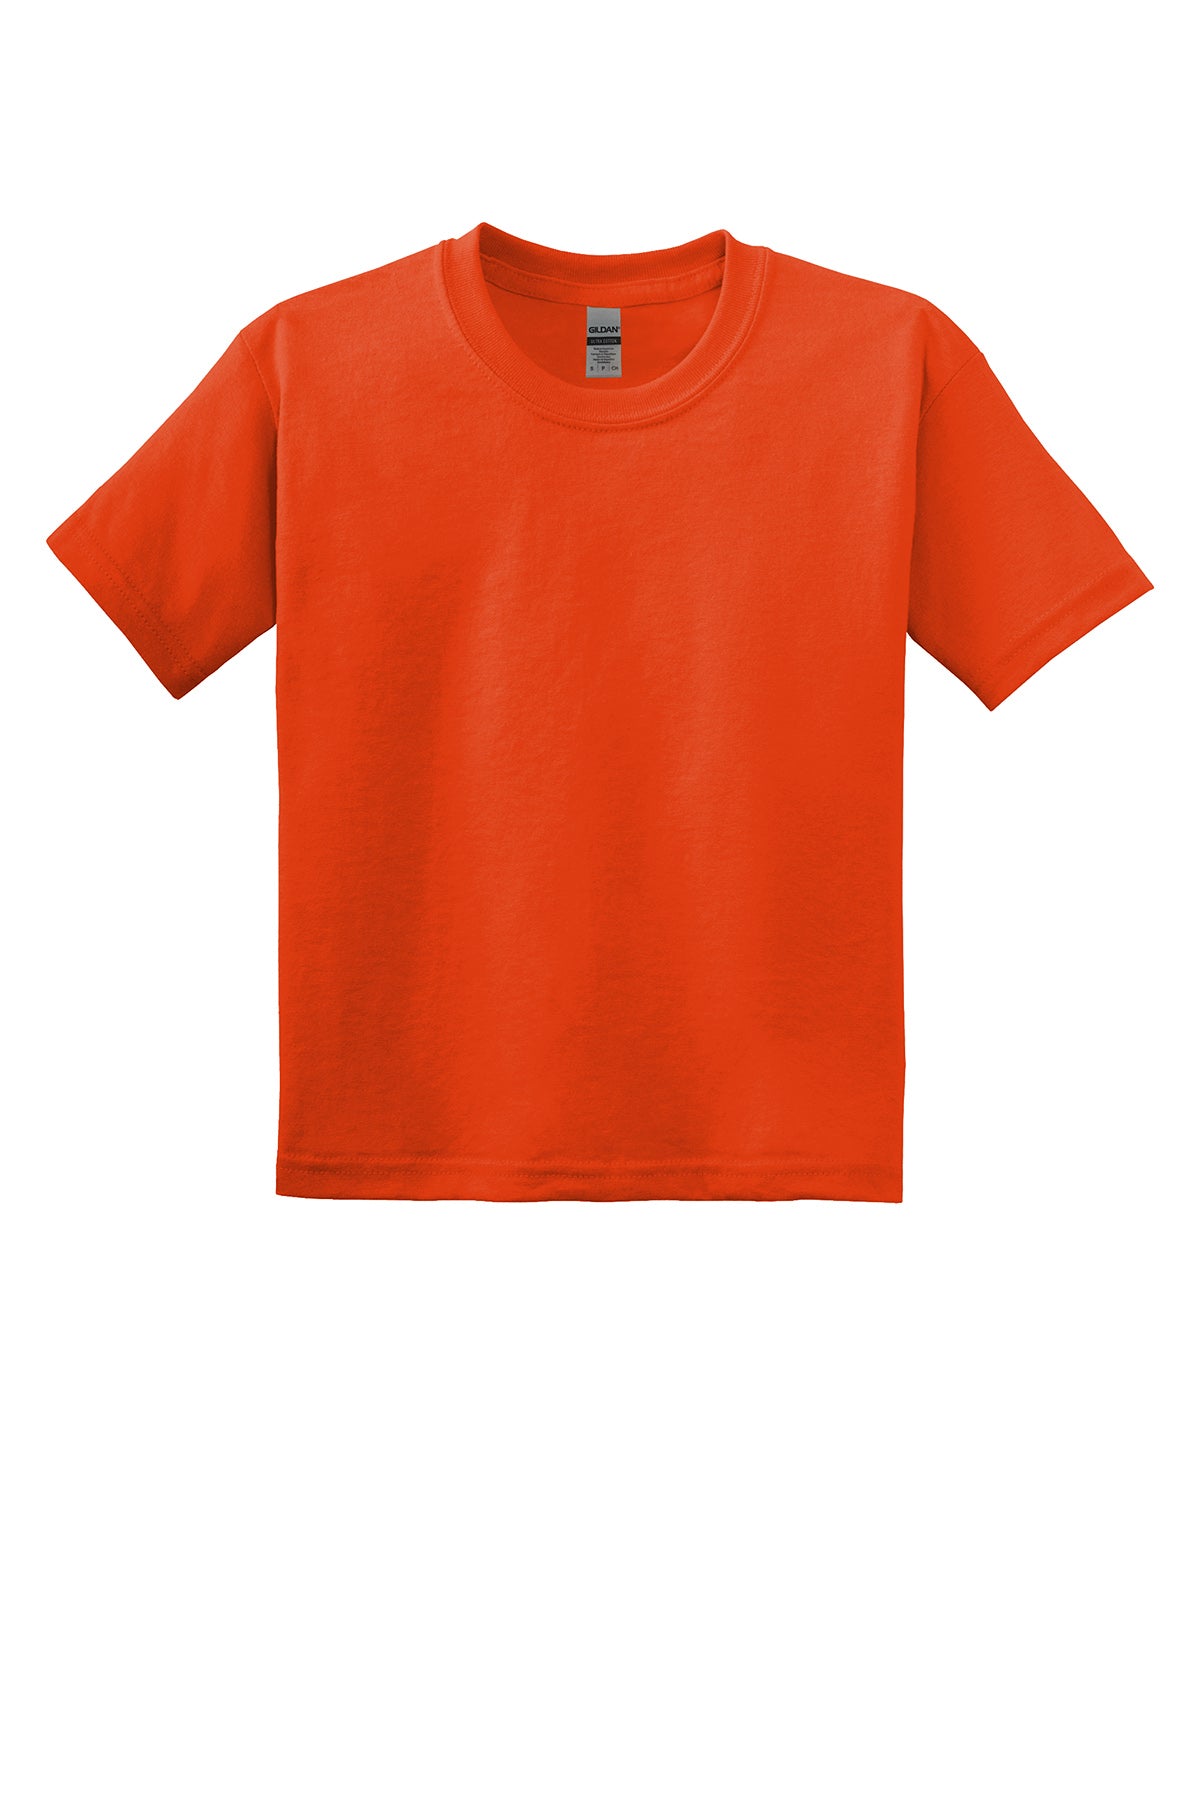 Gildan 8000B Youth Dryblend T-Shirt Yth Small / Orange